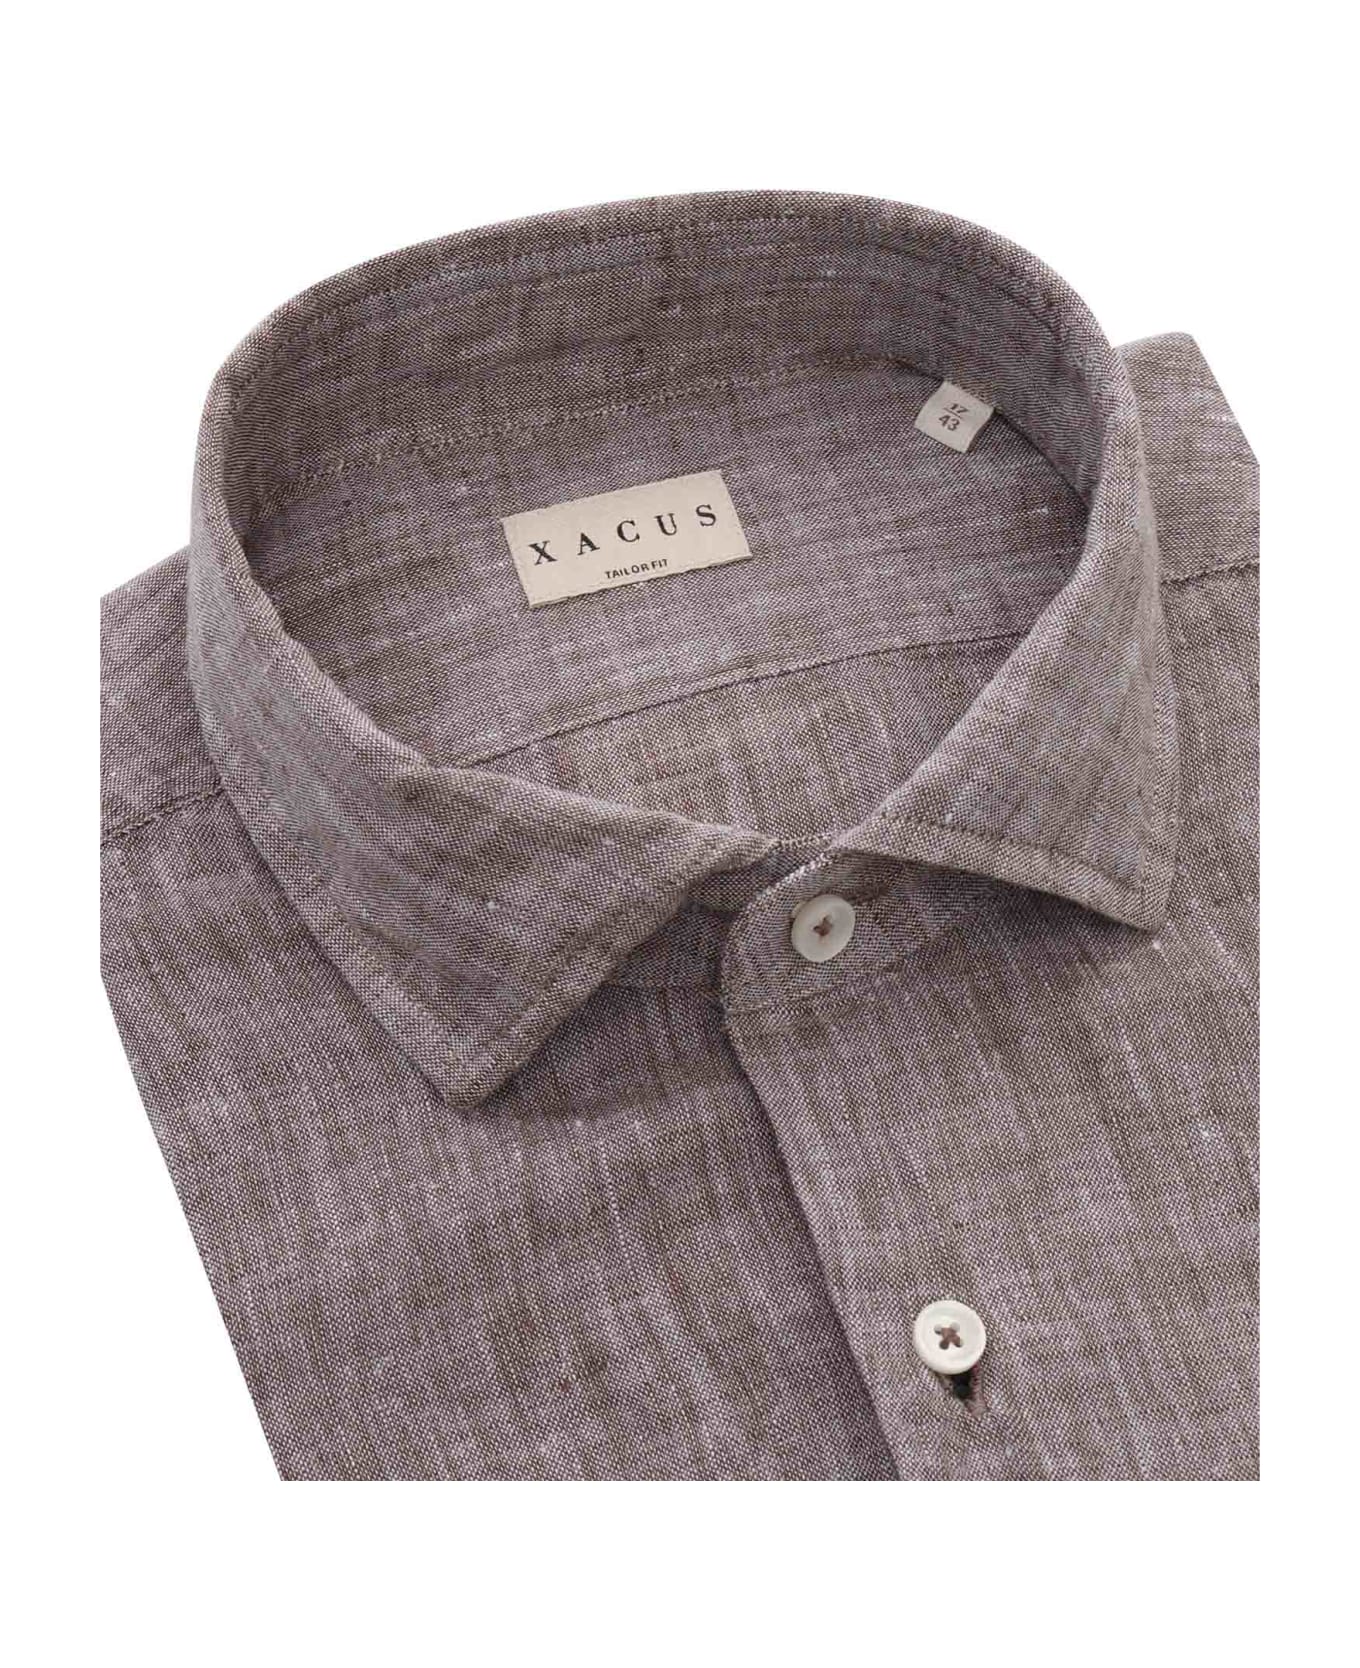 Xacus Brown Linen Shirt - BROWN シャツ